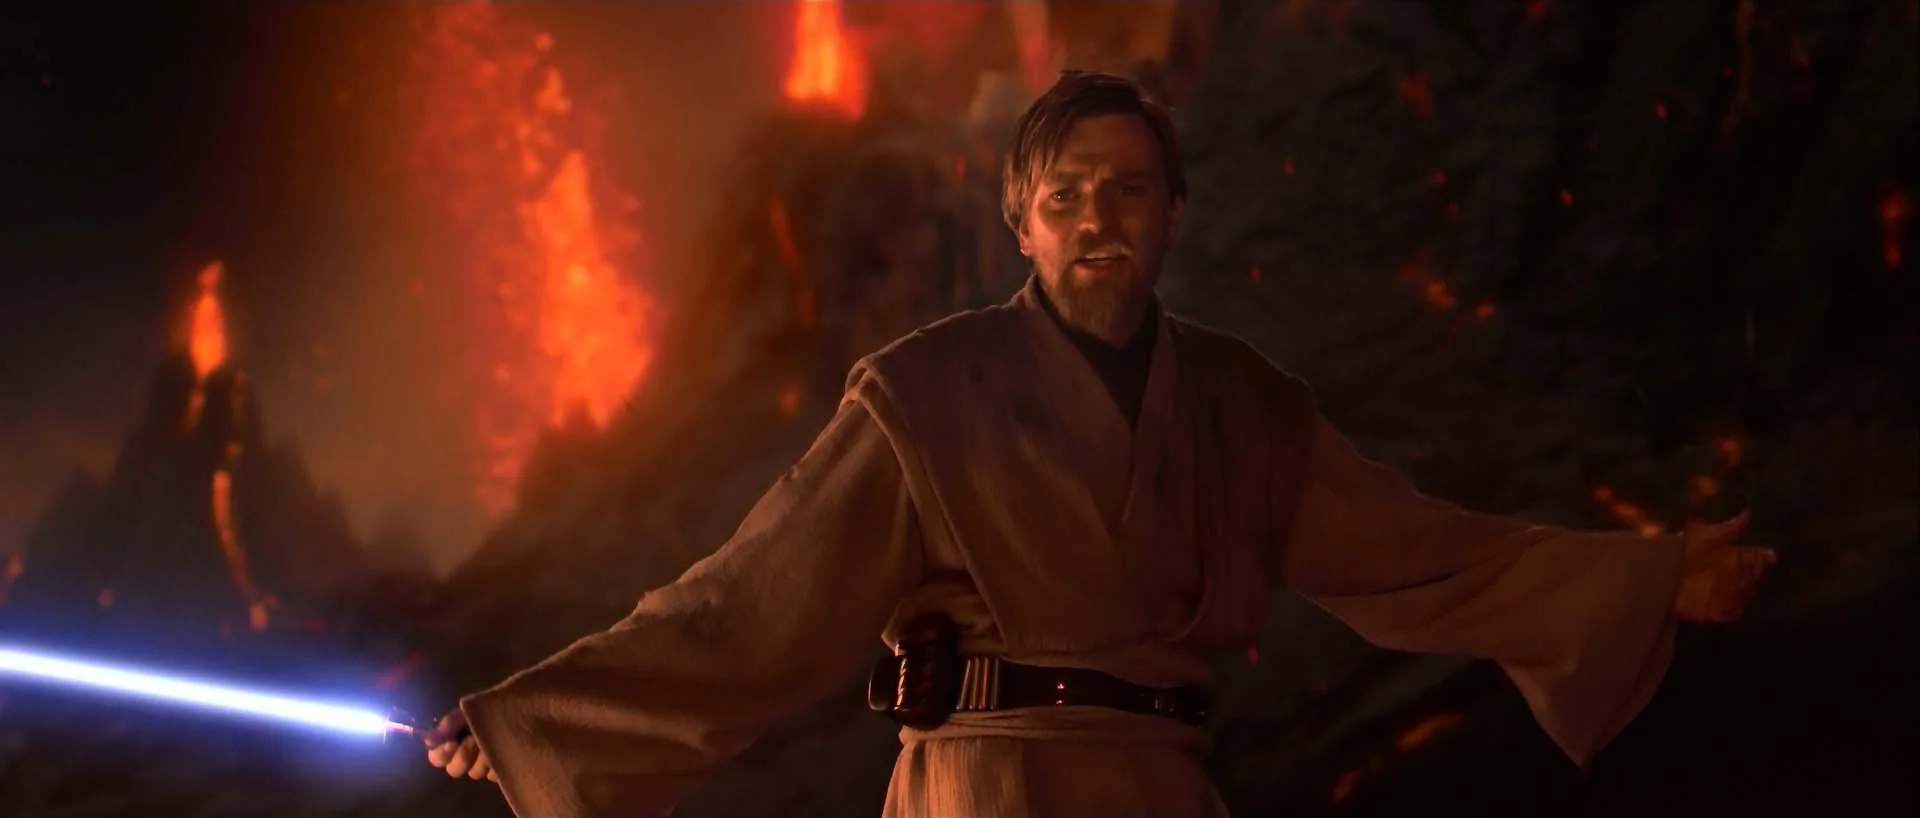 Disney приступила к переговорам на тему сольника про Оби-Вана Кеноби - фото 1